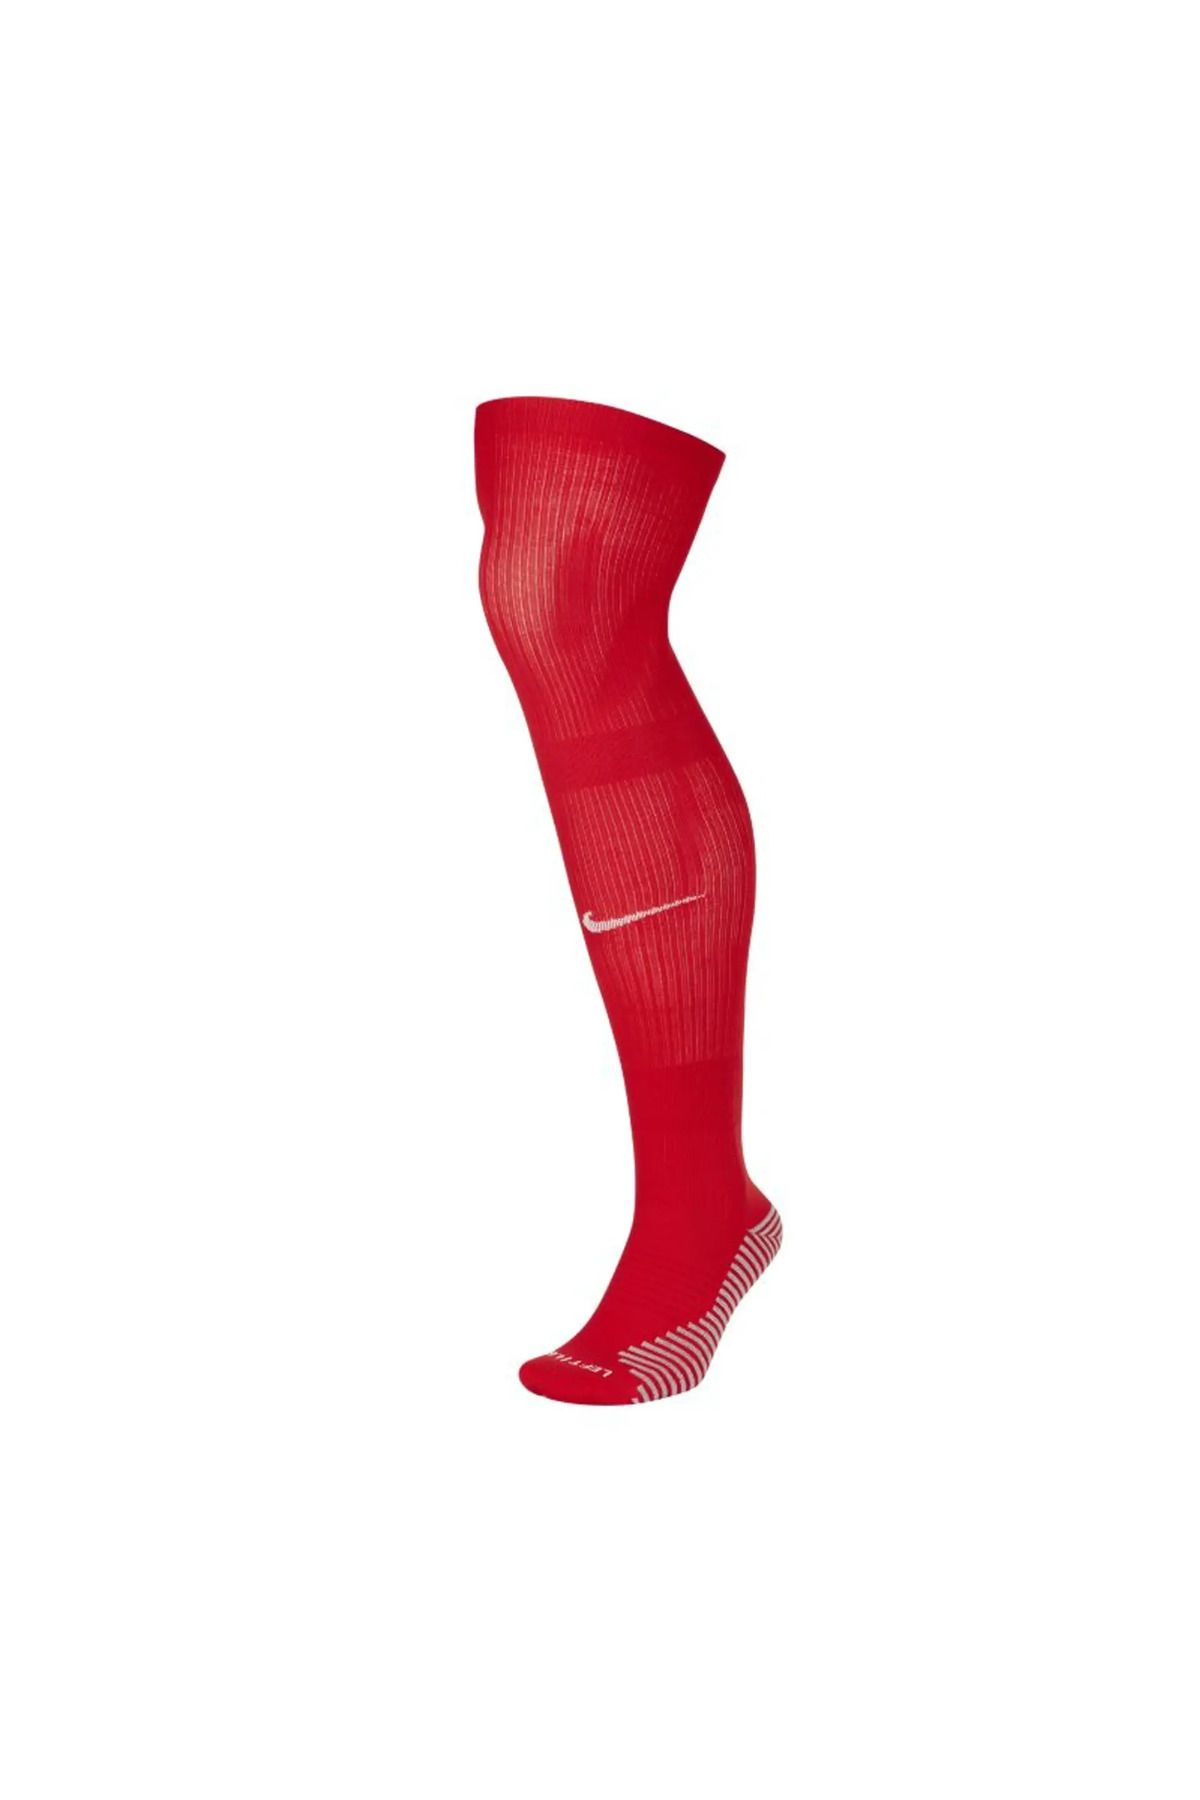 Nike 2020-2021 France Nike Home Socks (Red)